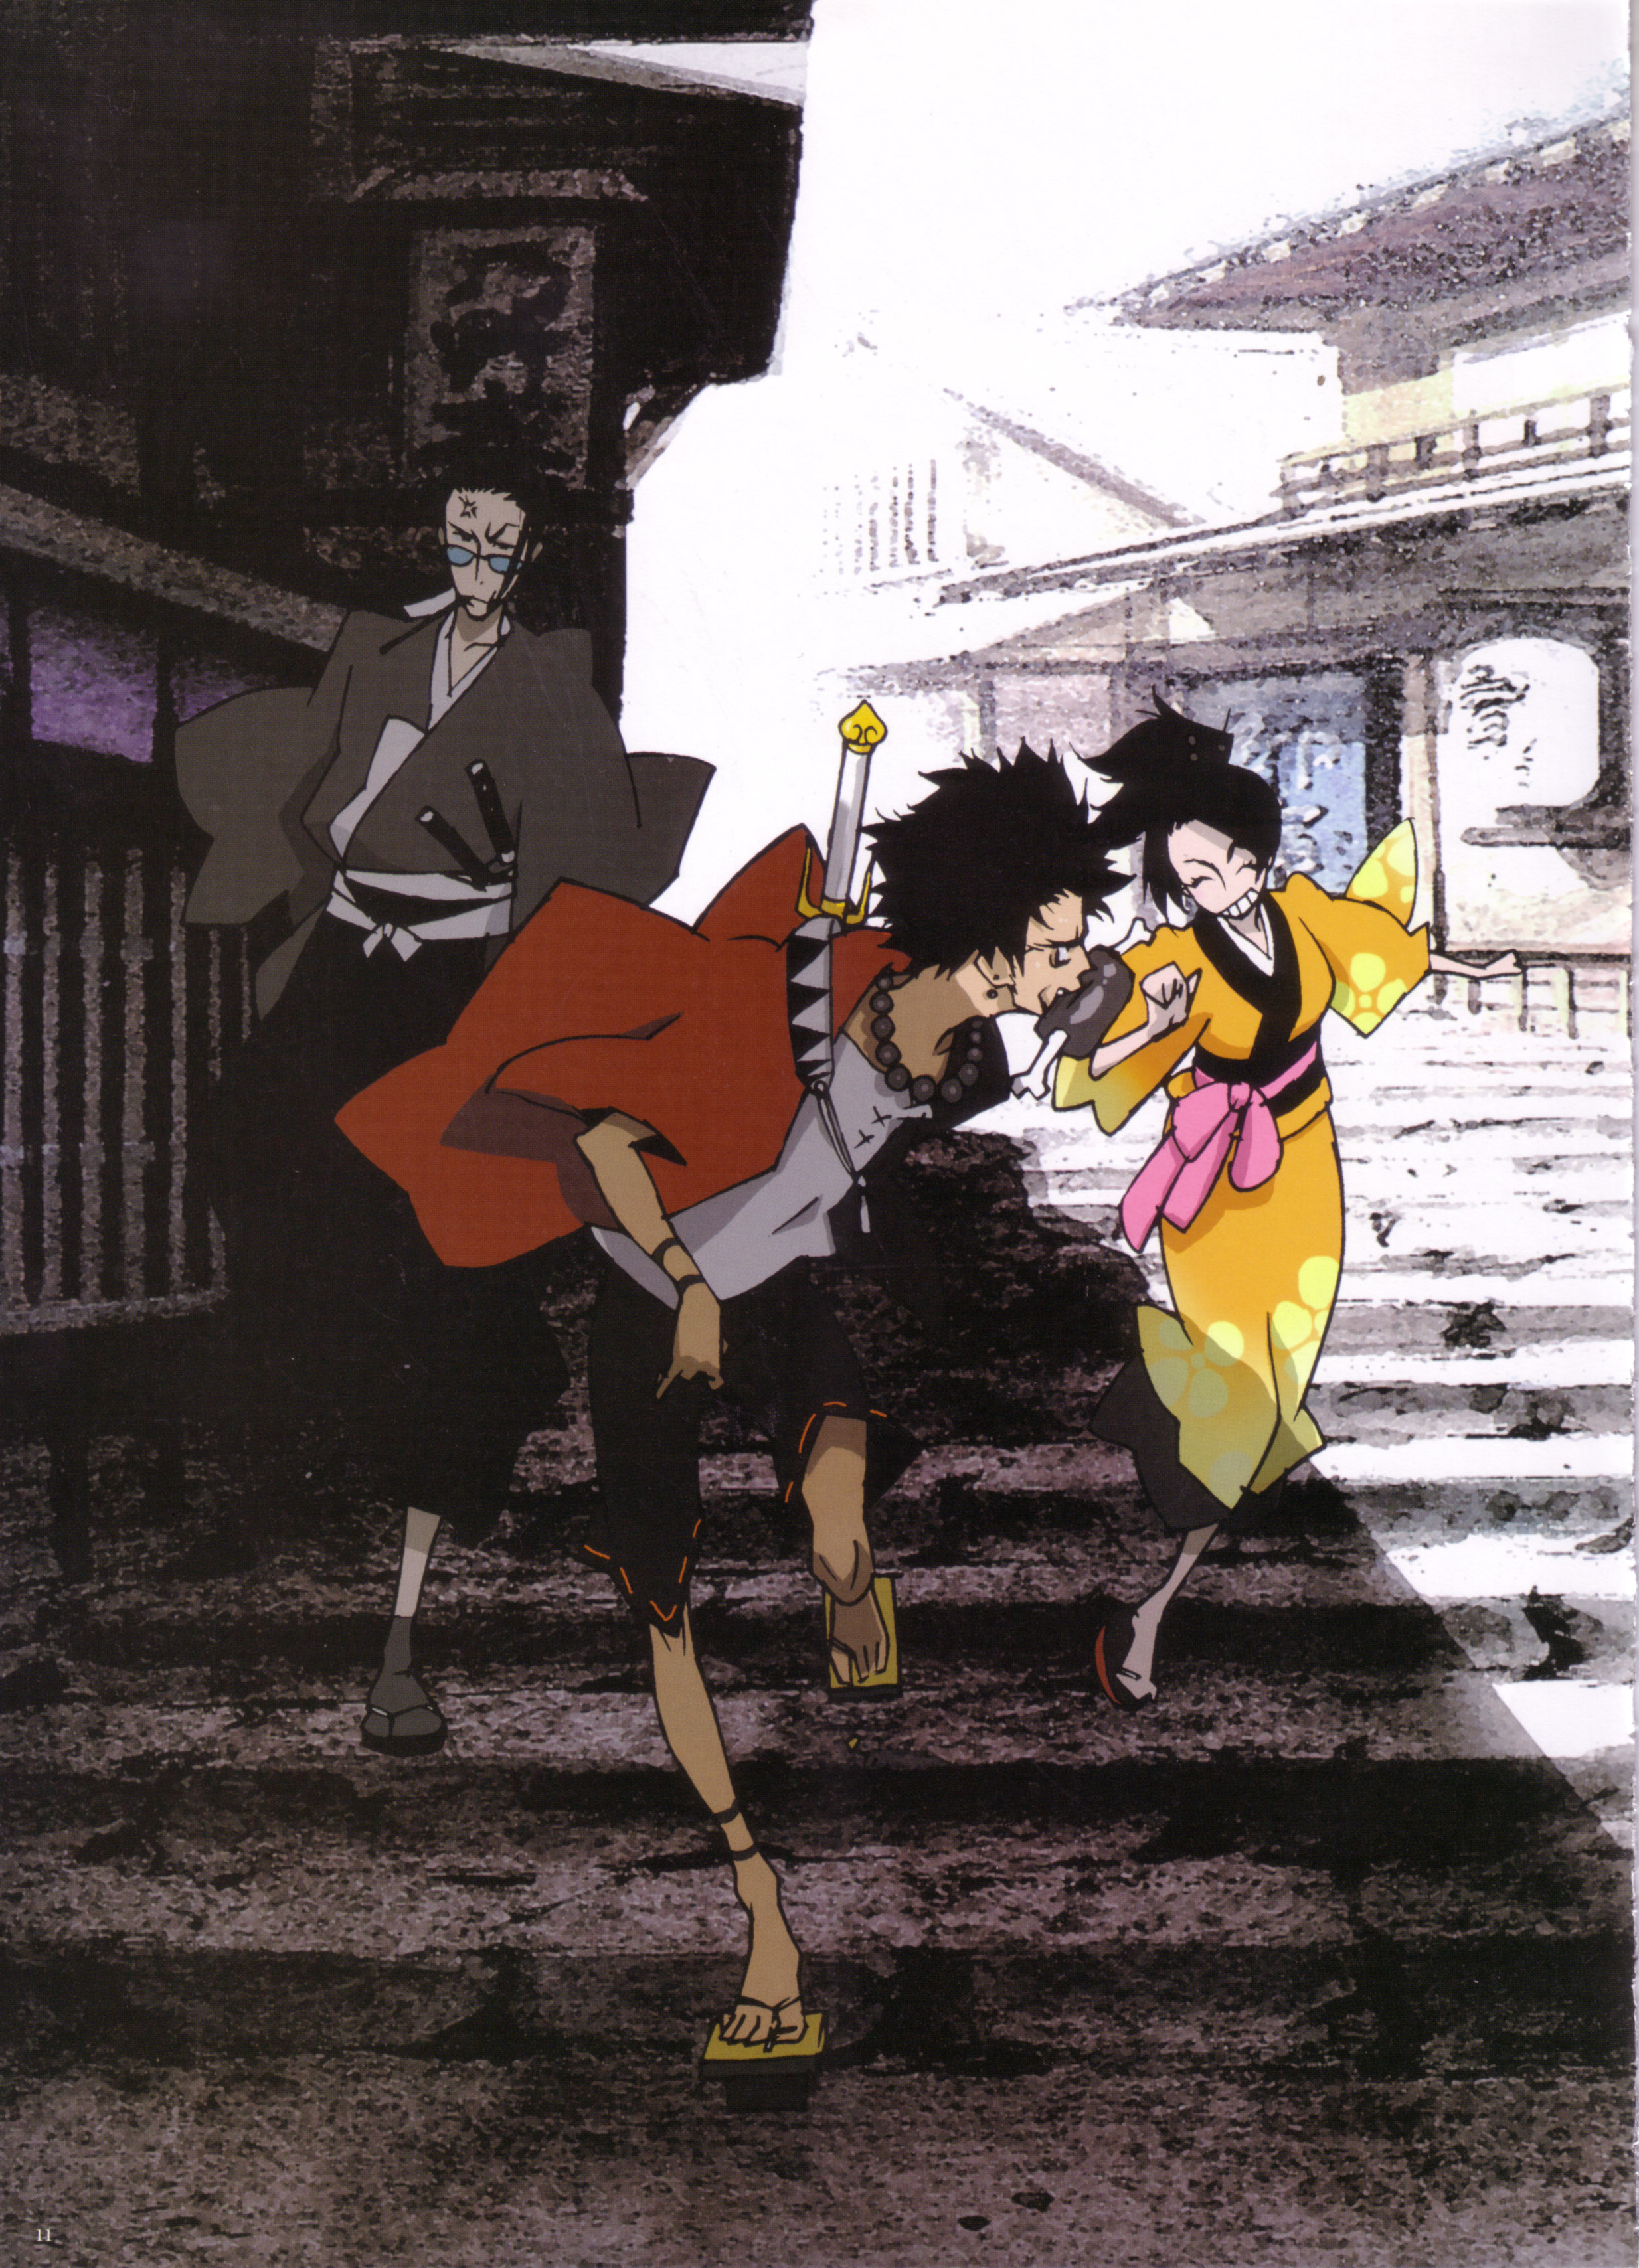 渡边信一郎生涯代表作《混沌武士》作画MAD！剑戟死斗和嘻哈文化的奇幻结合